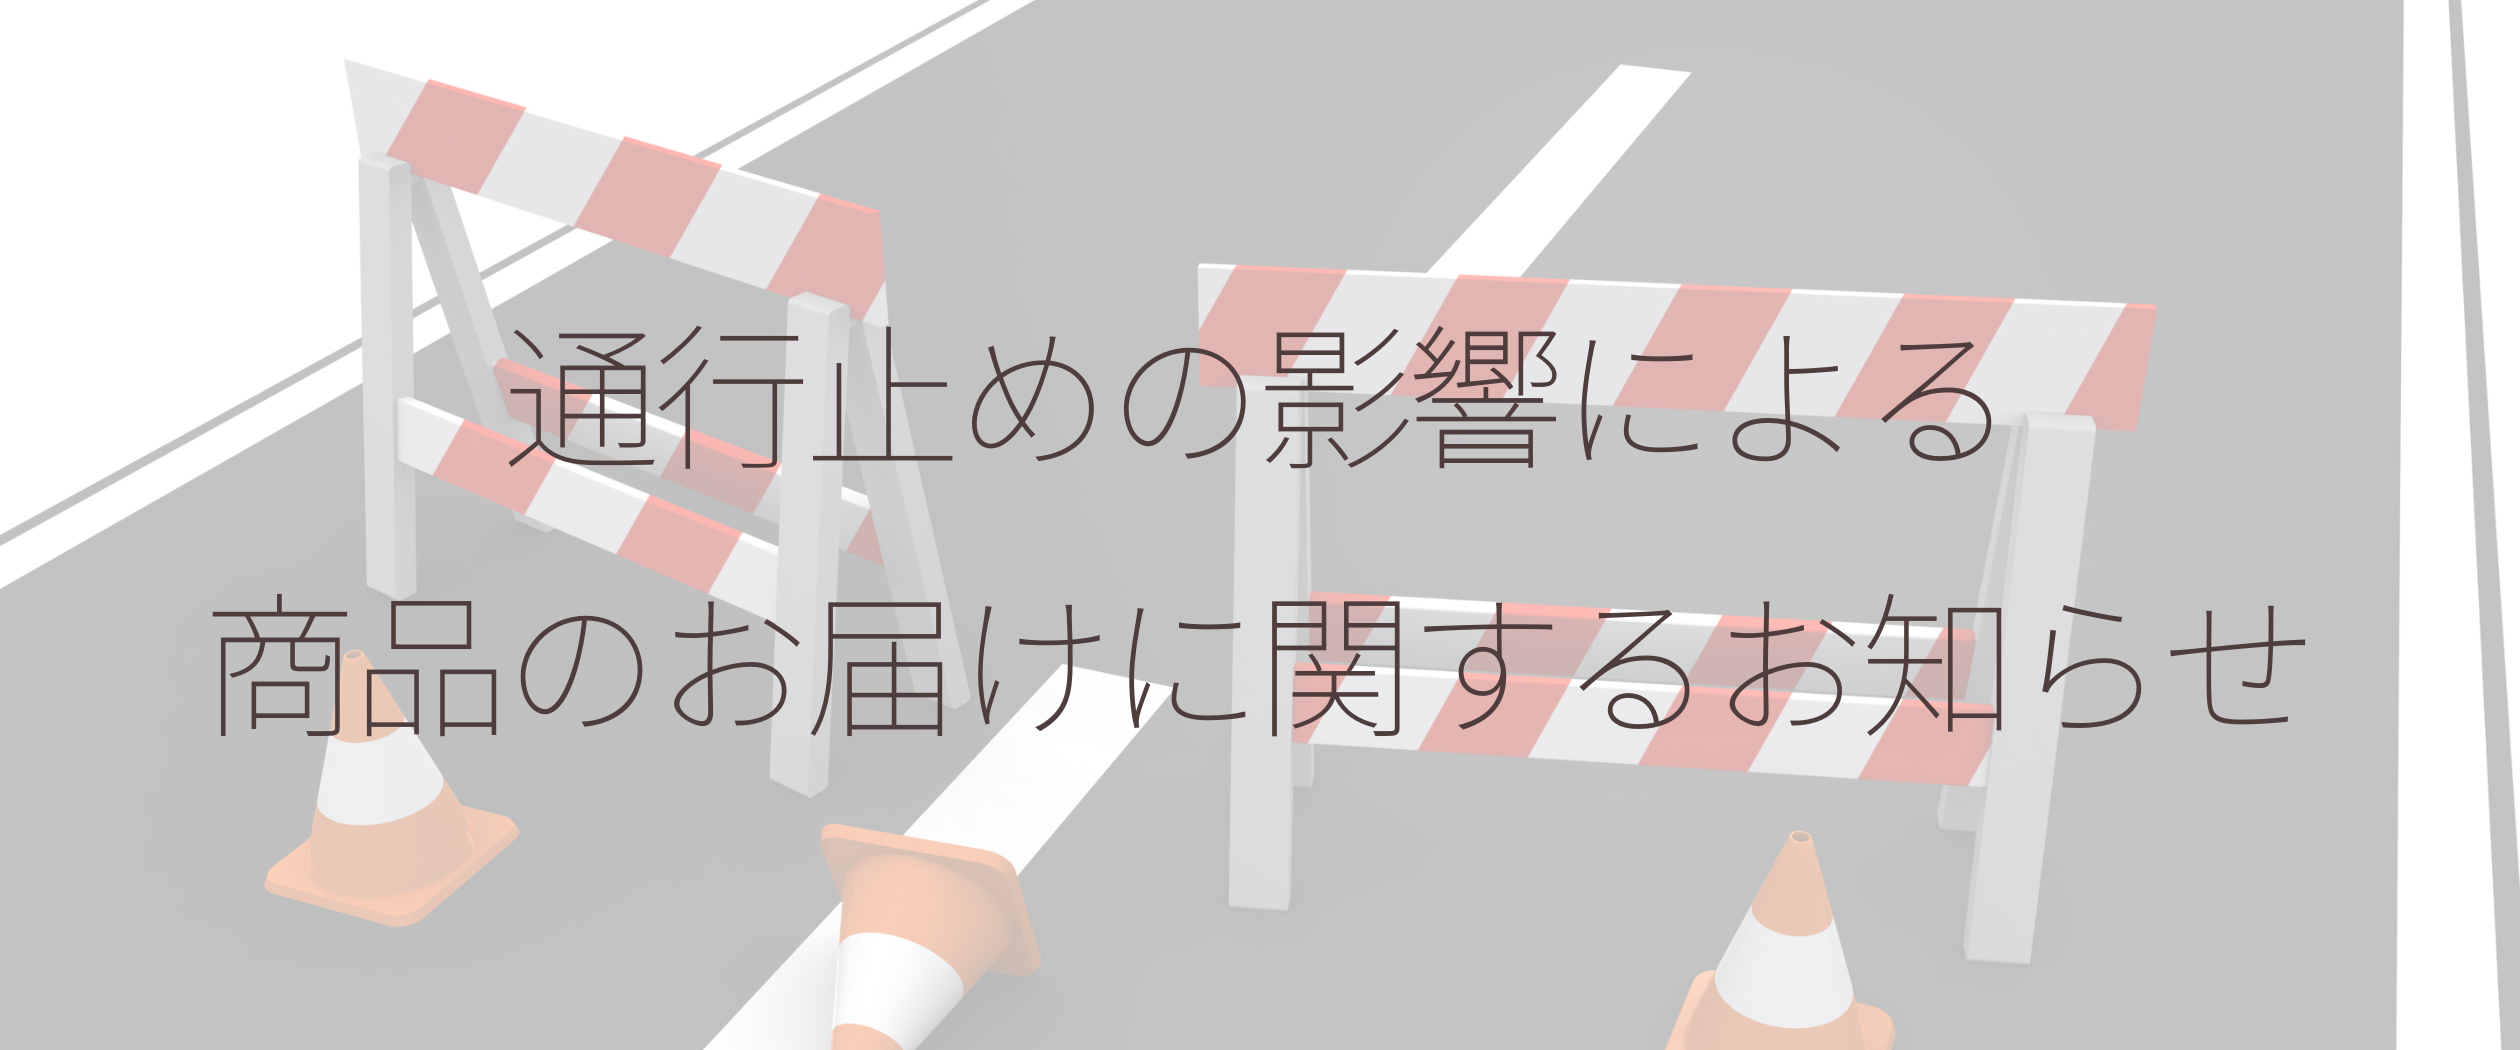 首都高速道路羽田線一部区間の通行止めの影響について（5月25日 10:00更新）